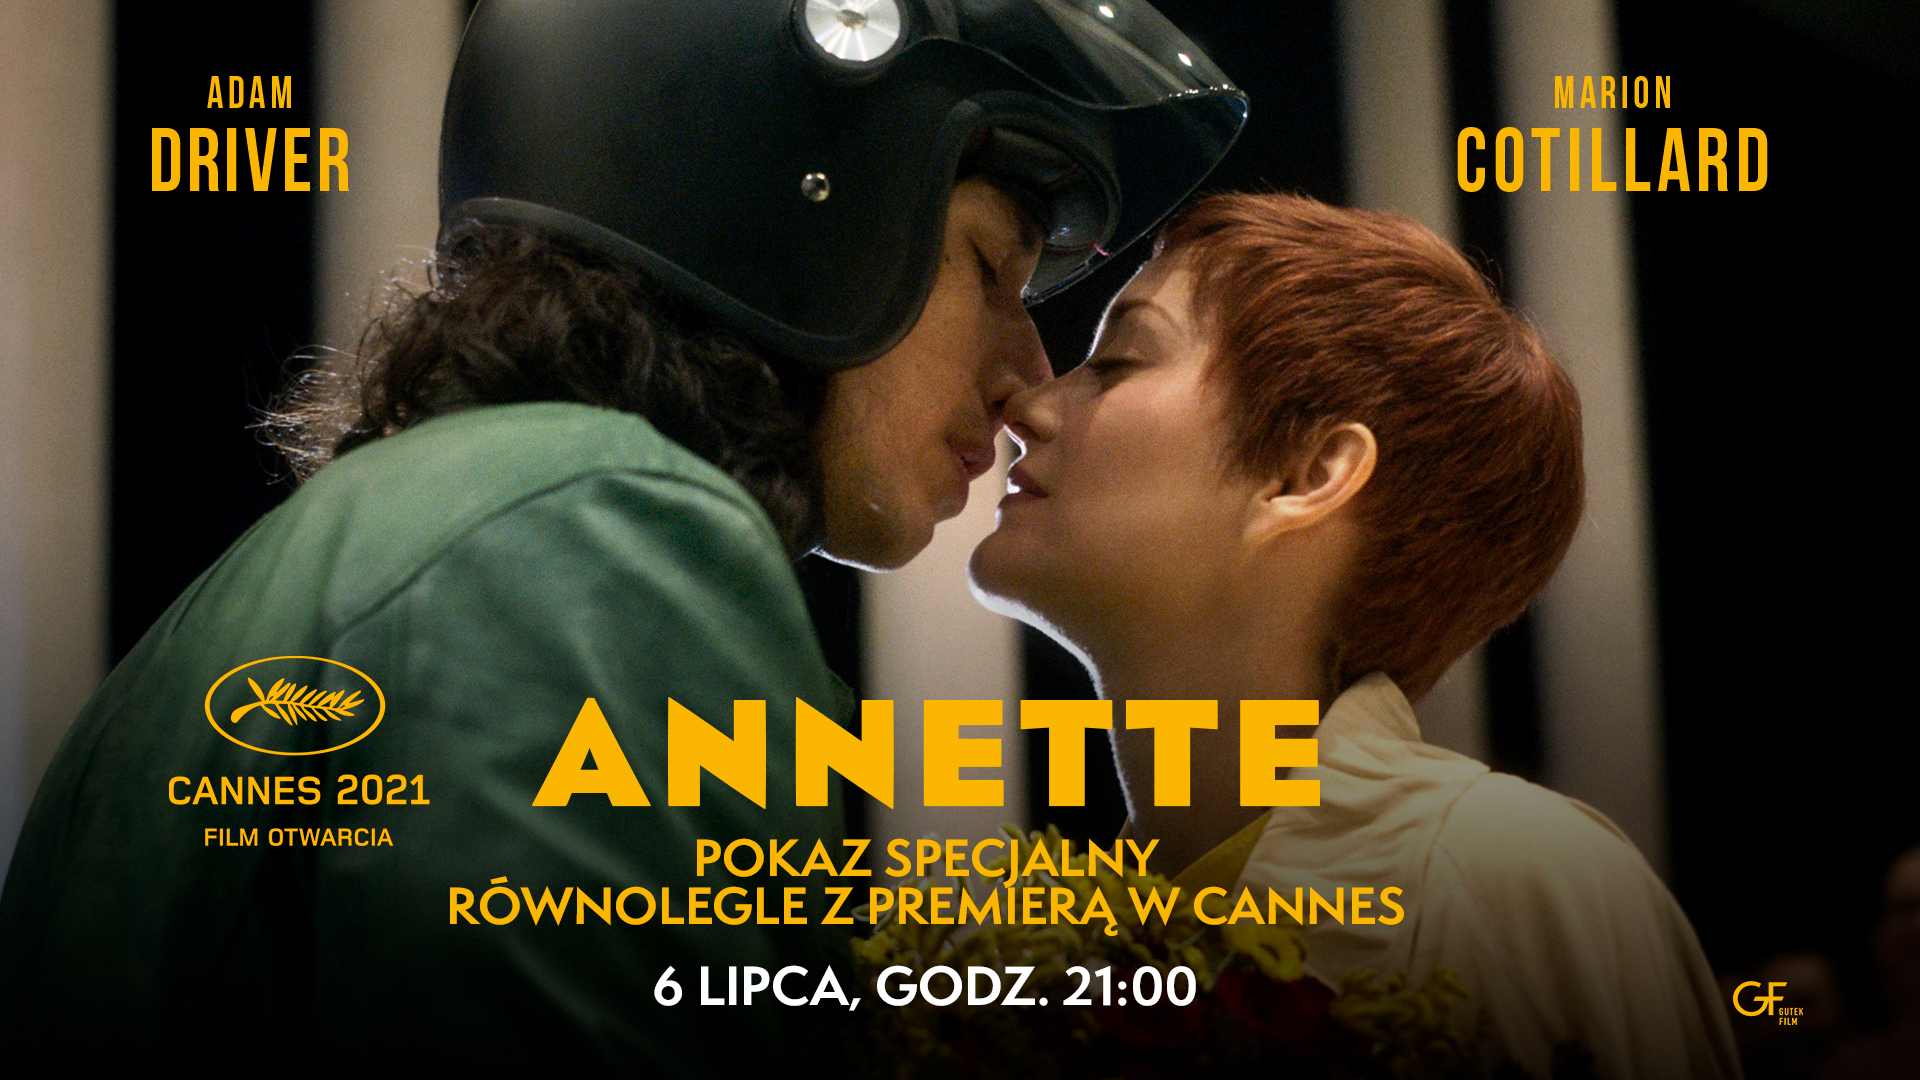 Annette równolegle z premierą w Cannes